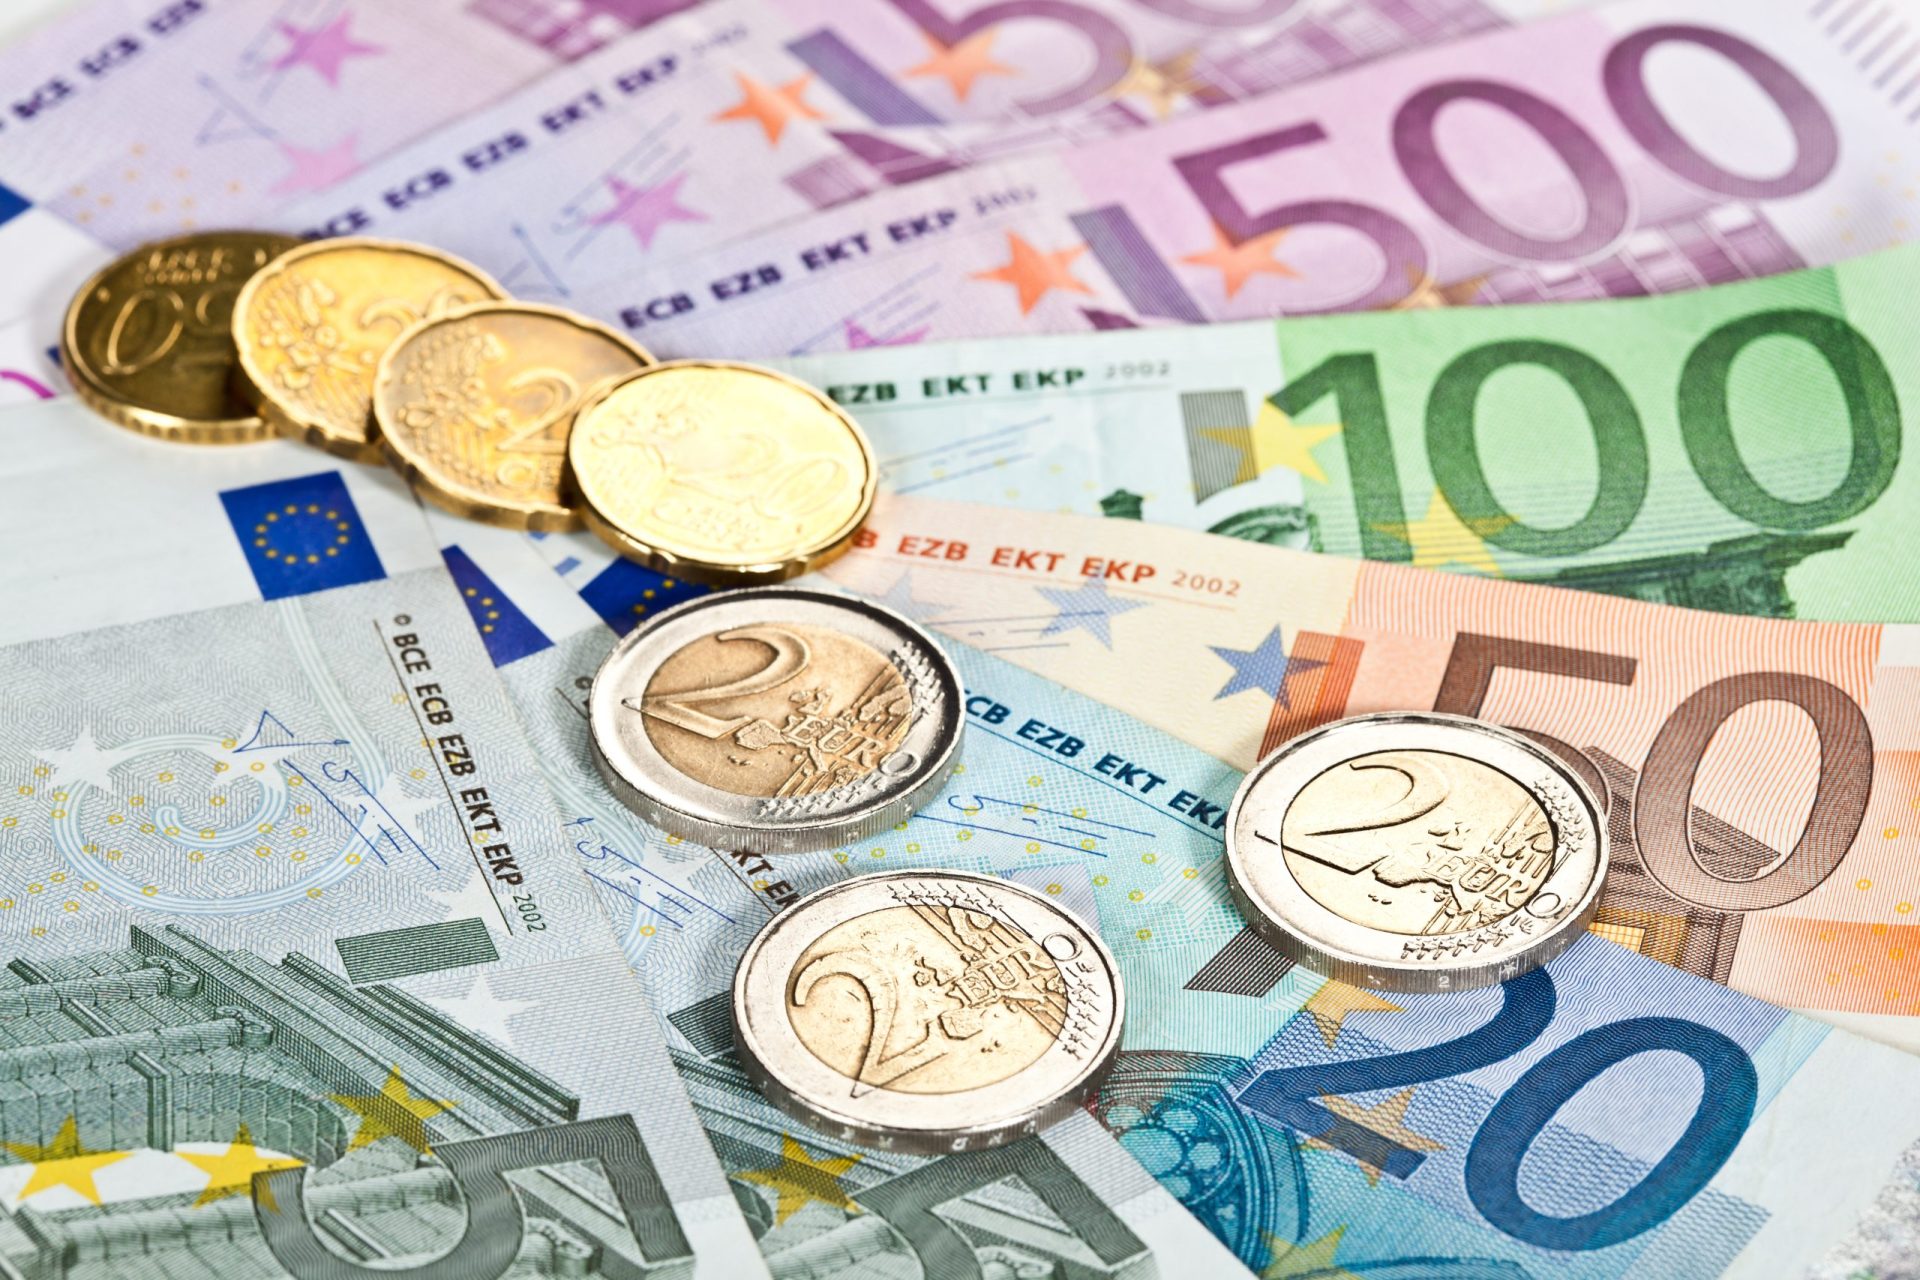 Portugal colocou Bilhetes de Tesouro a taxas negativas